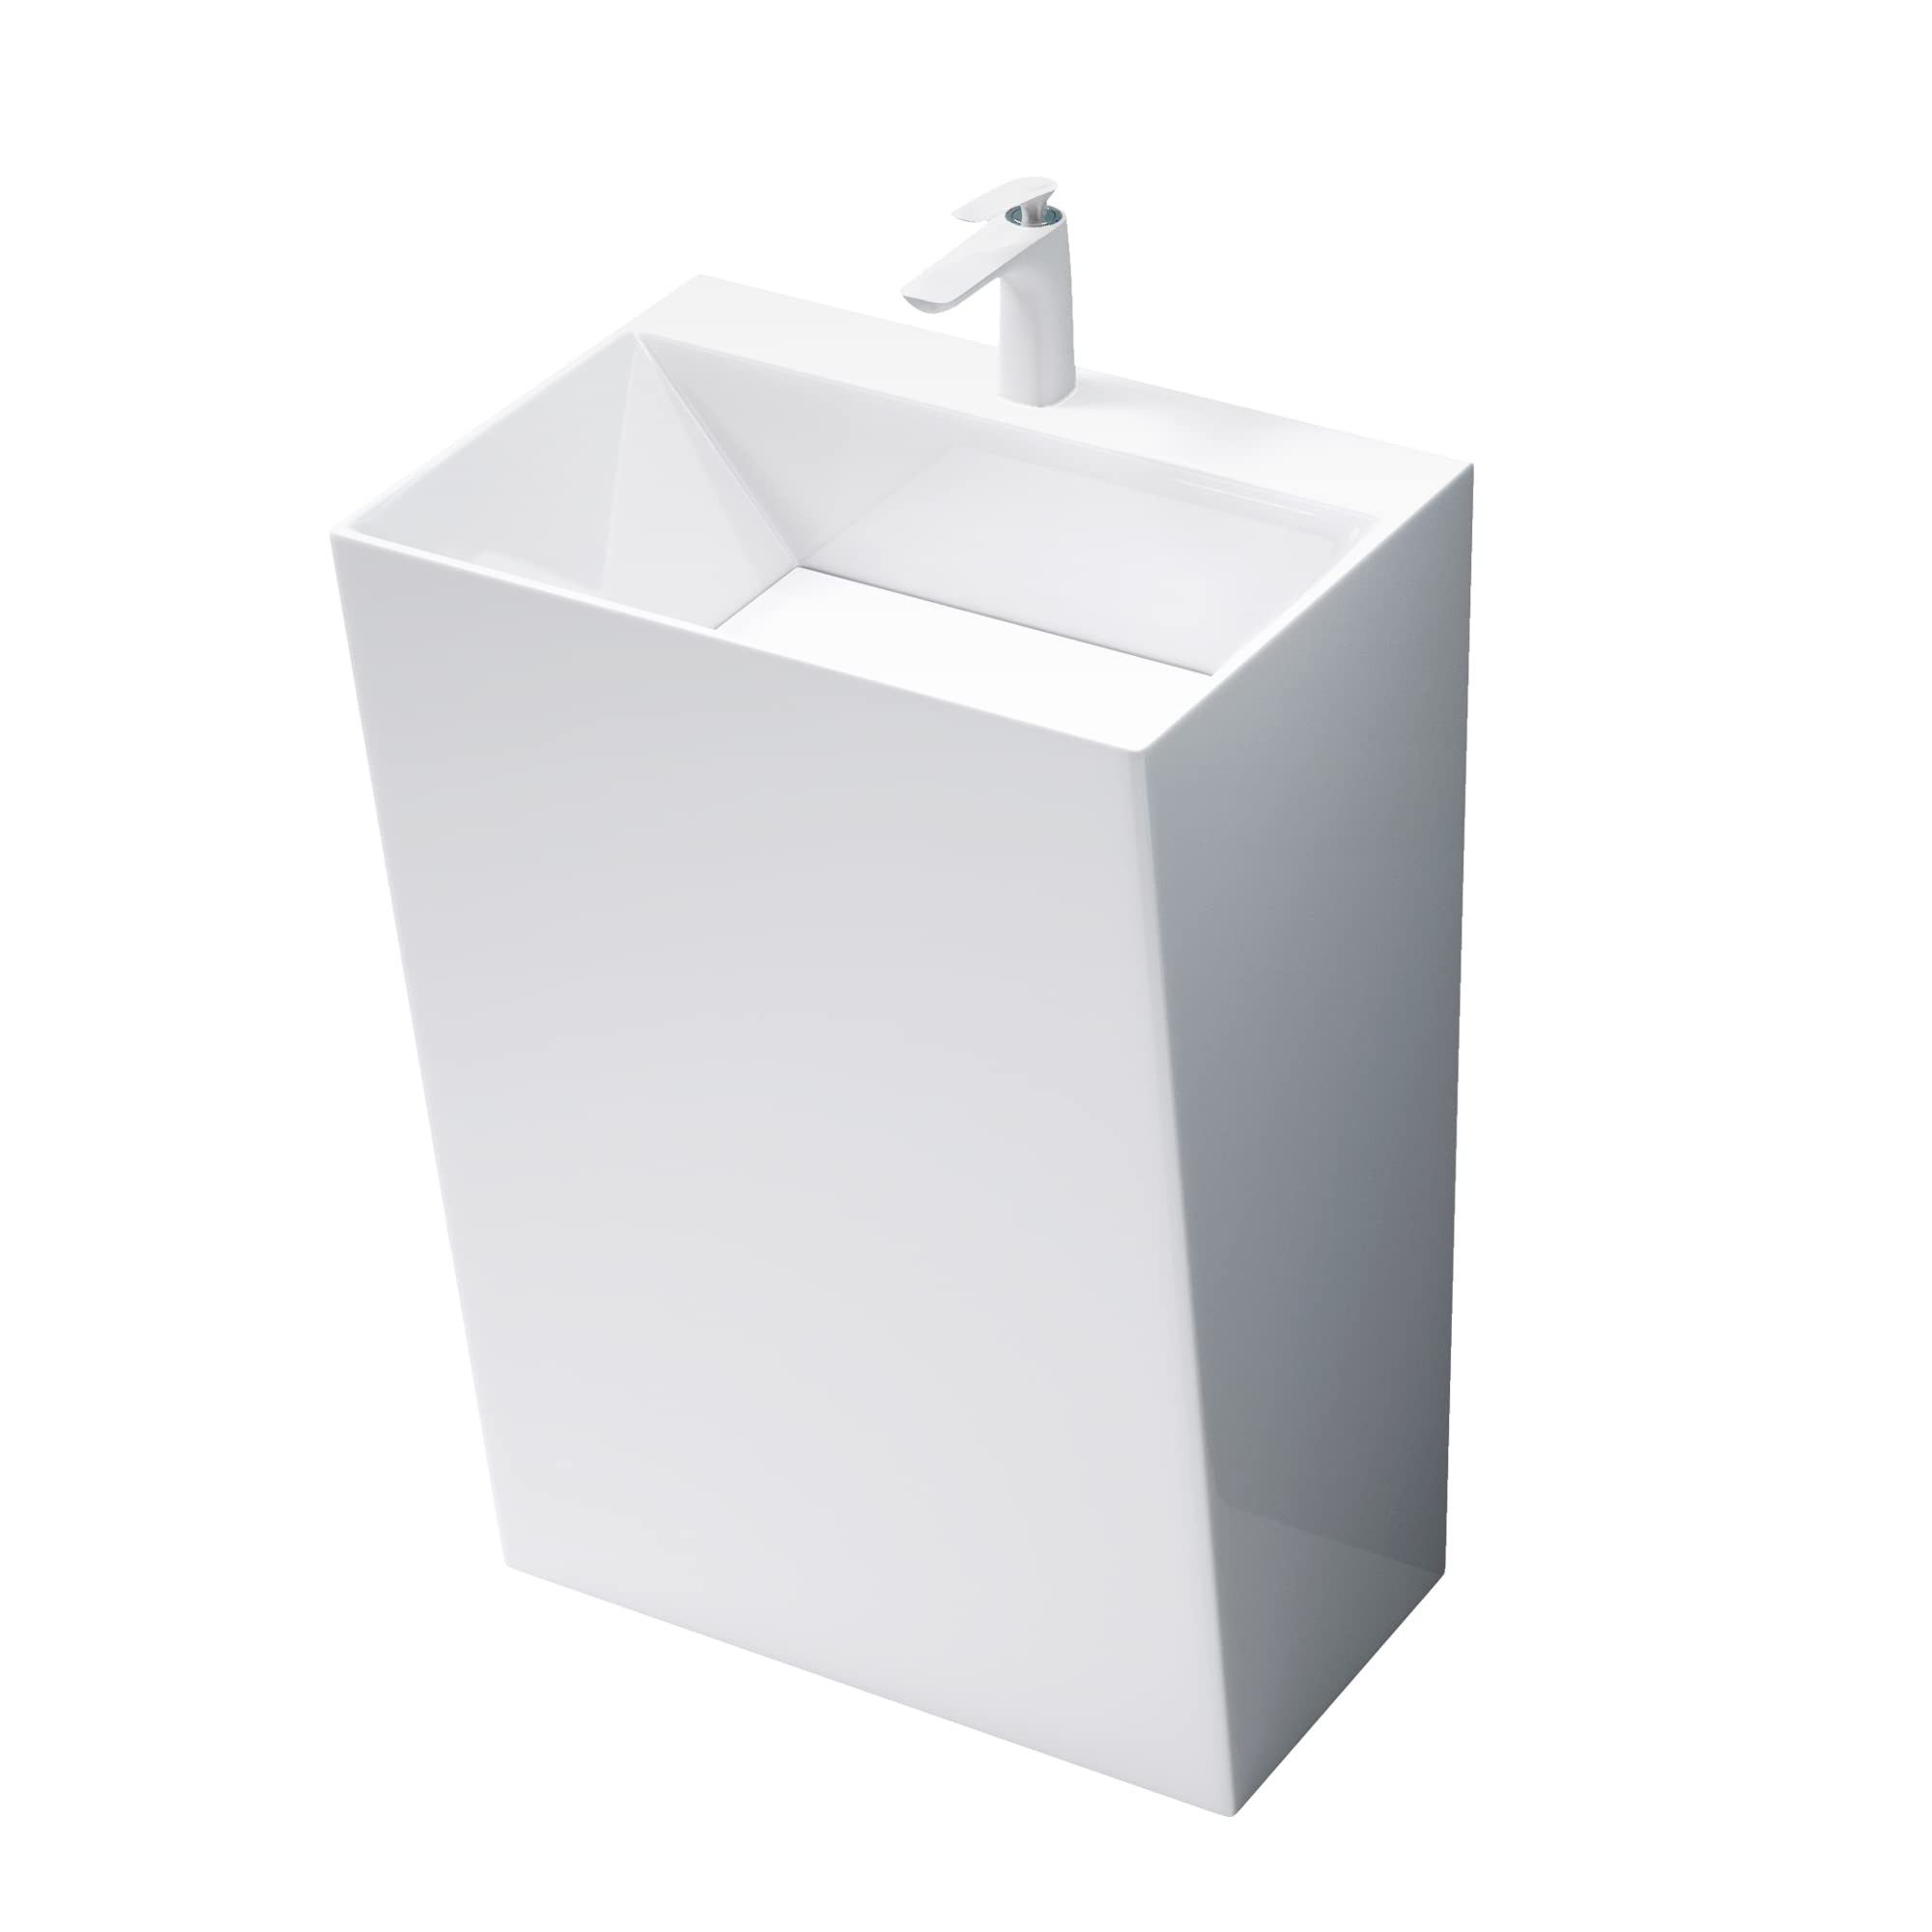 Mai & Mai Aufsatzwaschbecken Design Standwaschbecken freistehend Col40 weiß, aus Mineralguss